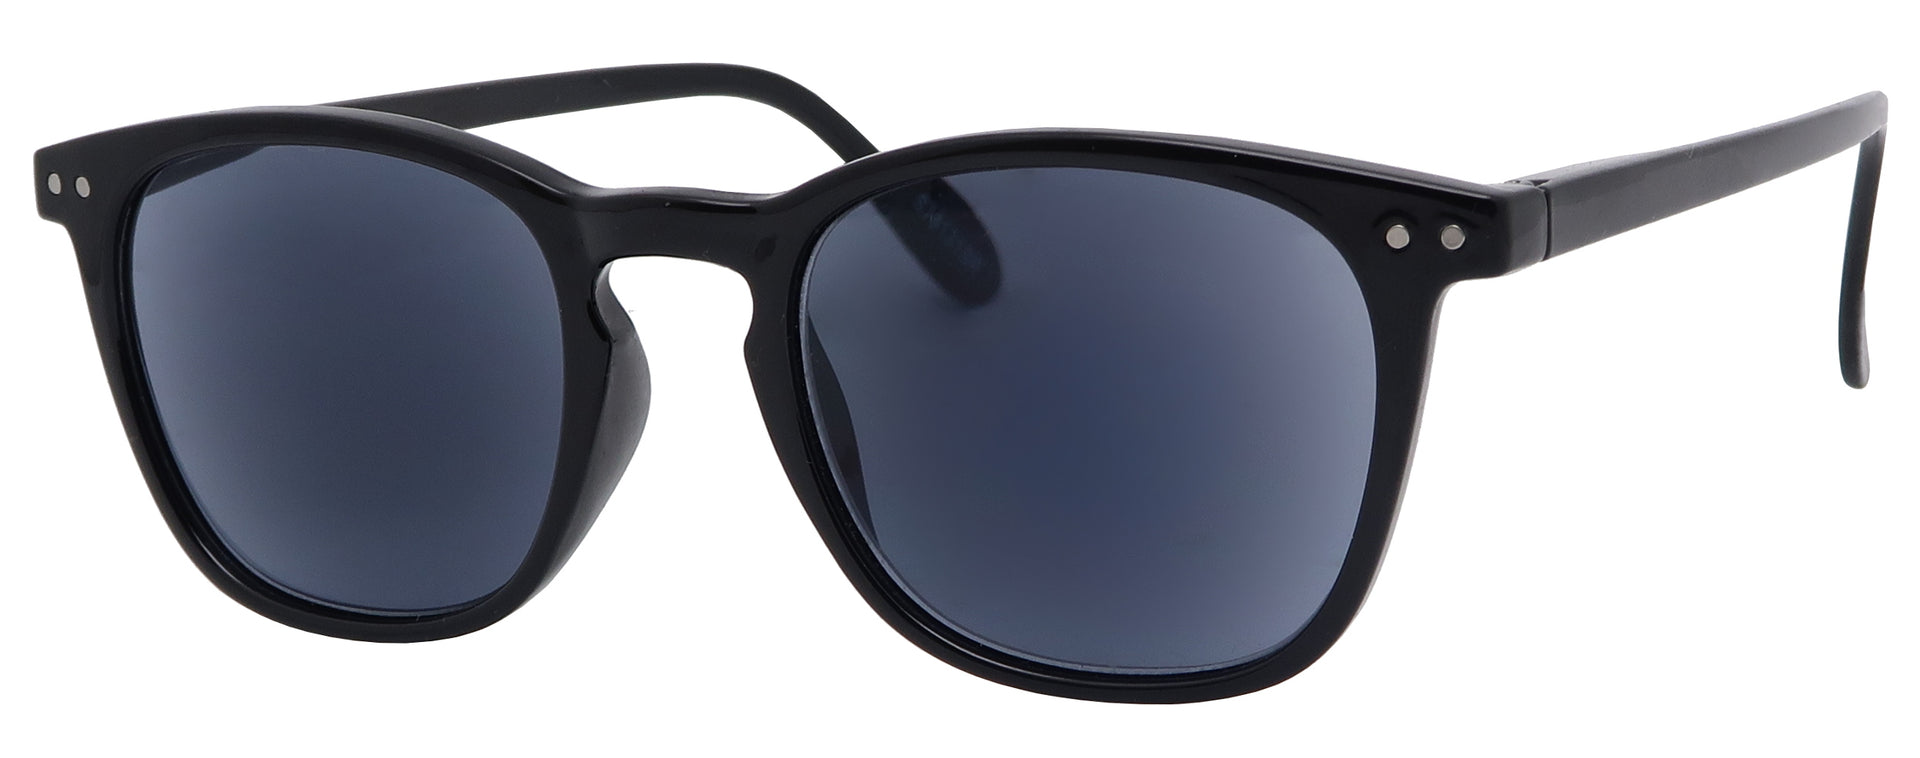 ST8131SR - Wholesale Unisex Keyhole Style Reading Sunglasses in Black